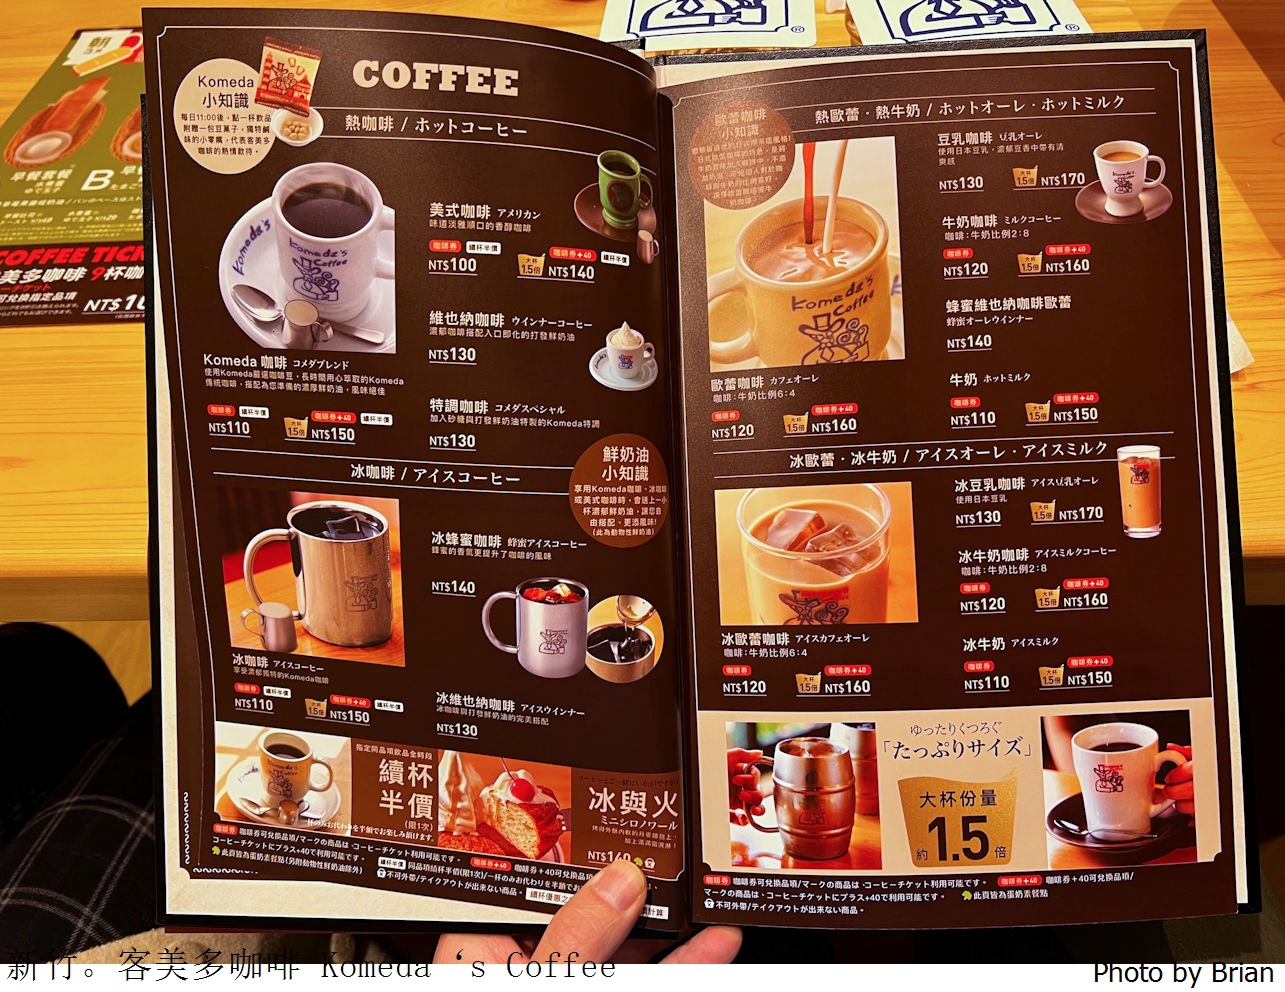 新竹客美多咖啡新竹公道店 Komdeda’s Coffee。來自日本名古屋早午餐店